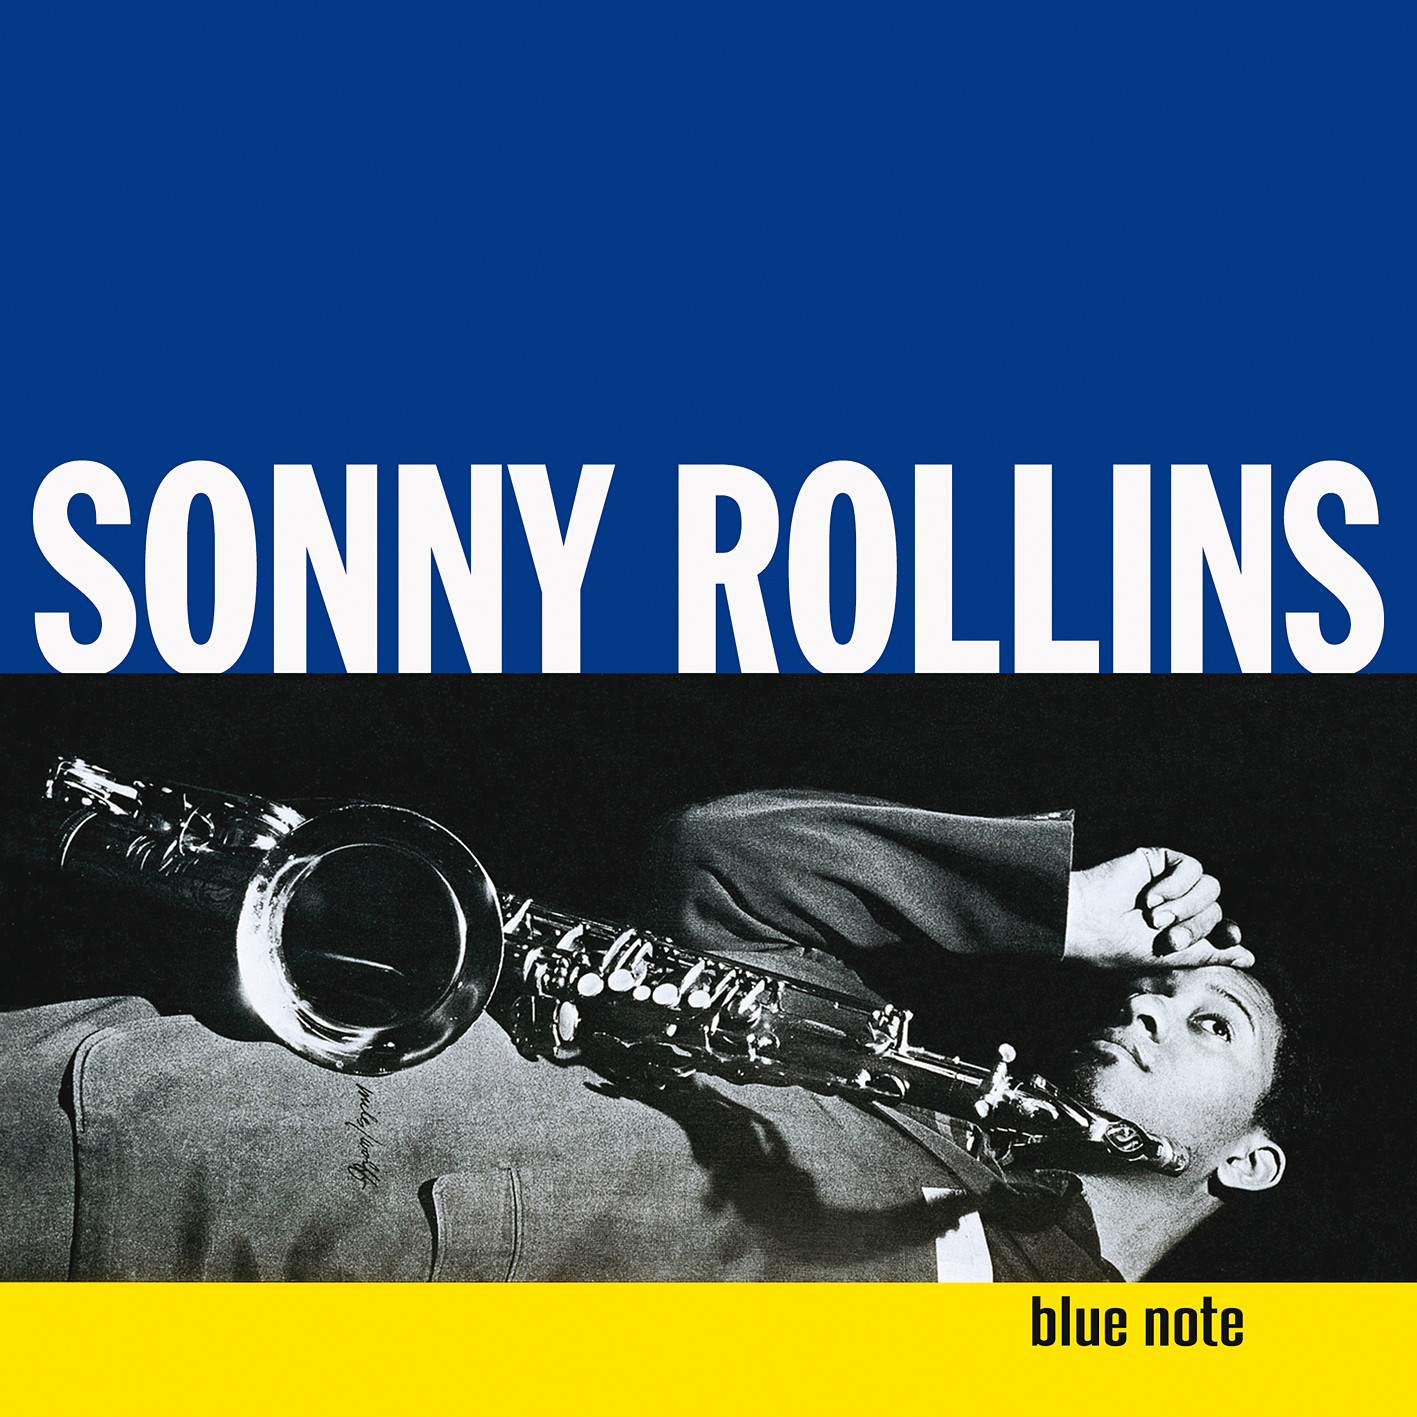 Sonny Rollins - Sonny Rollins, Volume 1 (1956/2013) [HDTracks FLAC 24bit/192kHz]